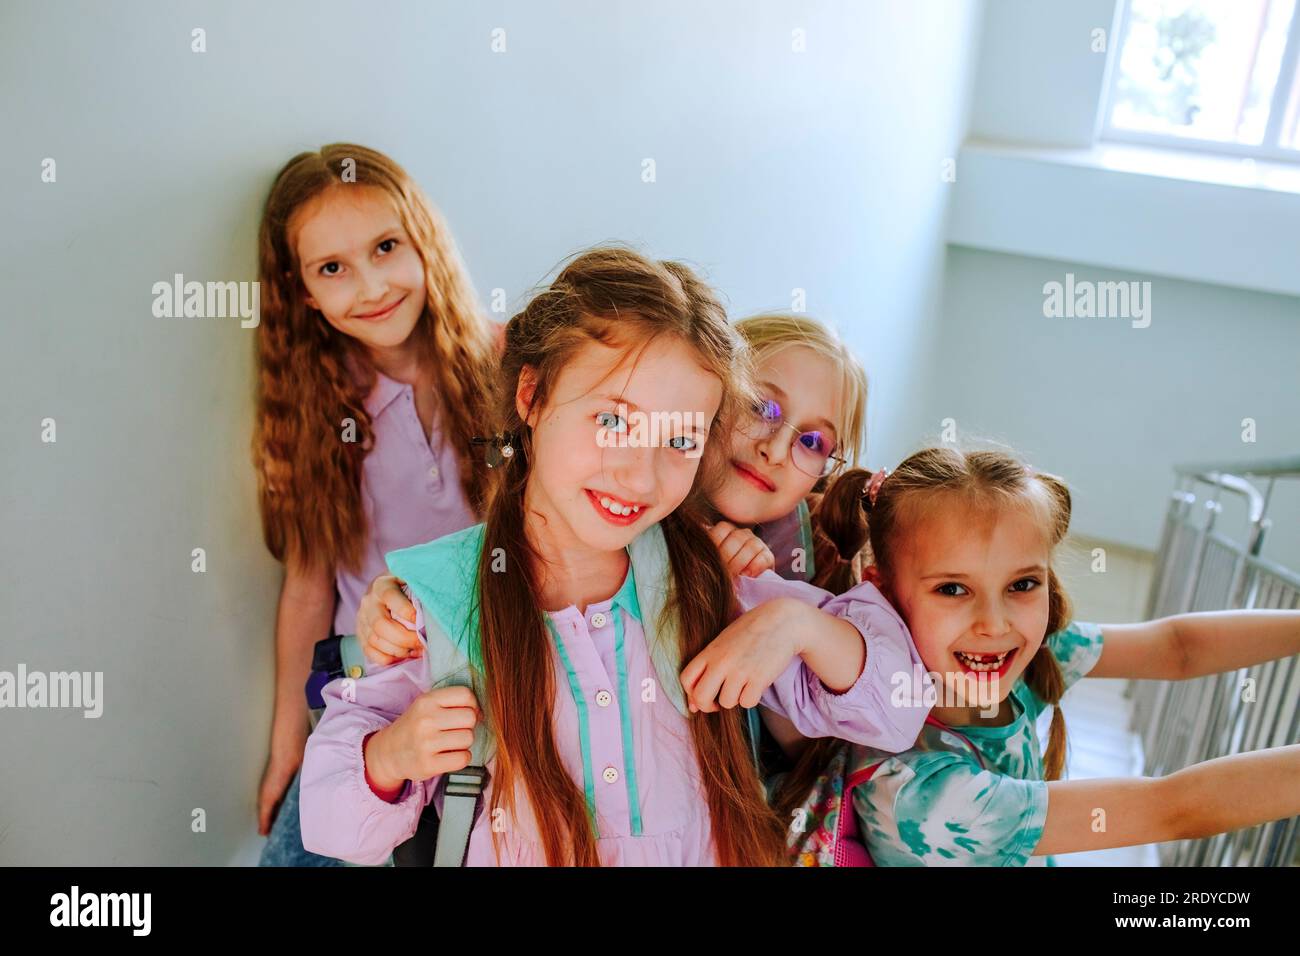 Lächelnde Schulmädchen, die zusammen auf der Treppe standen Stockfoto